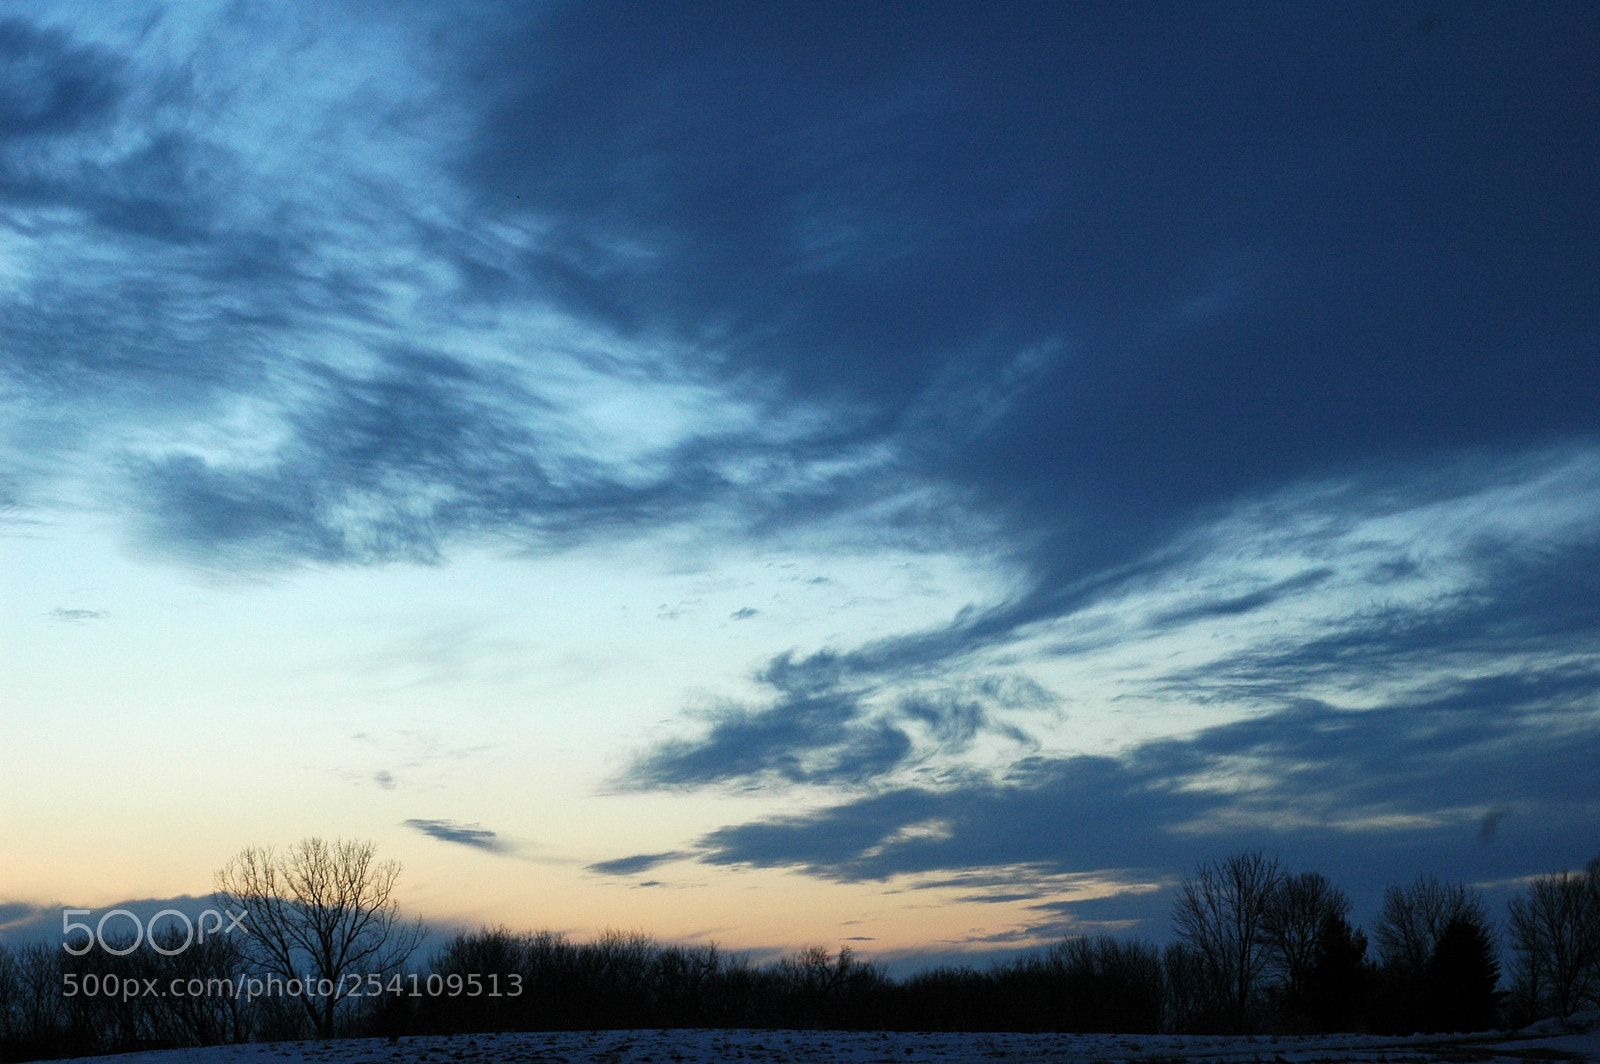 Nikon D70 sample photo. Sunset sky photography